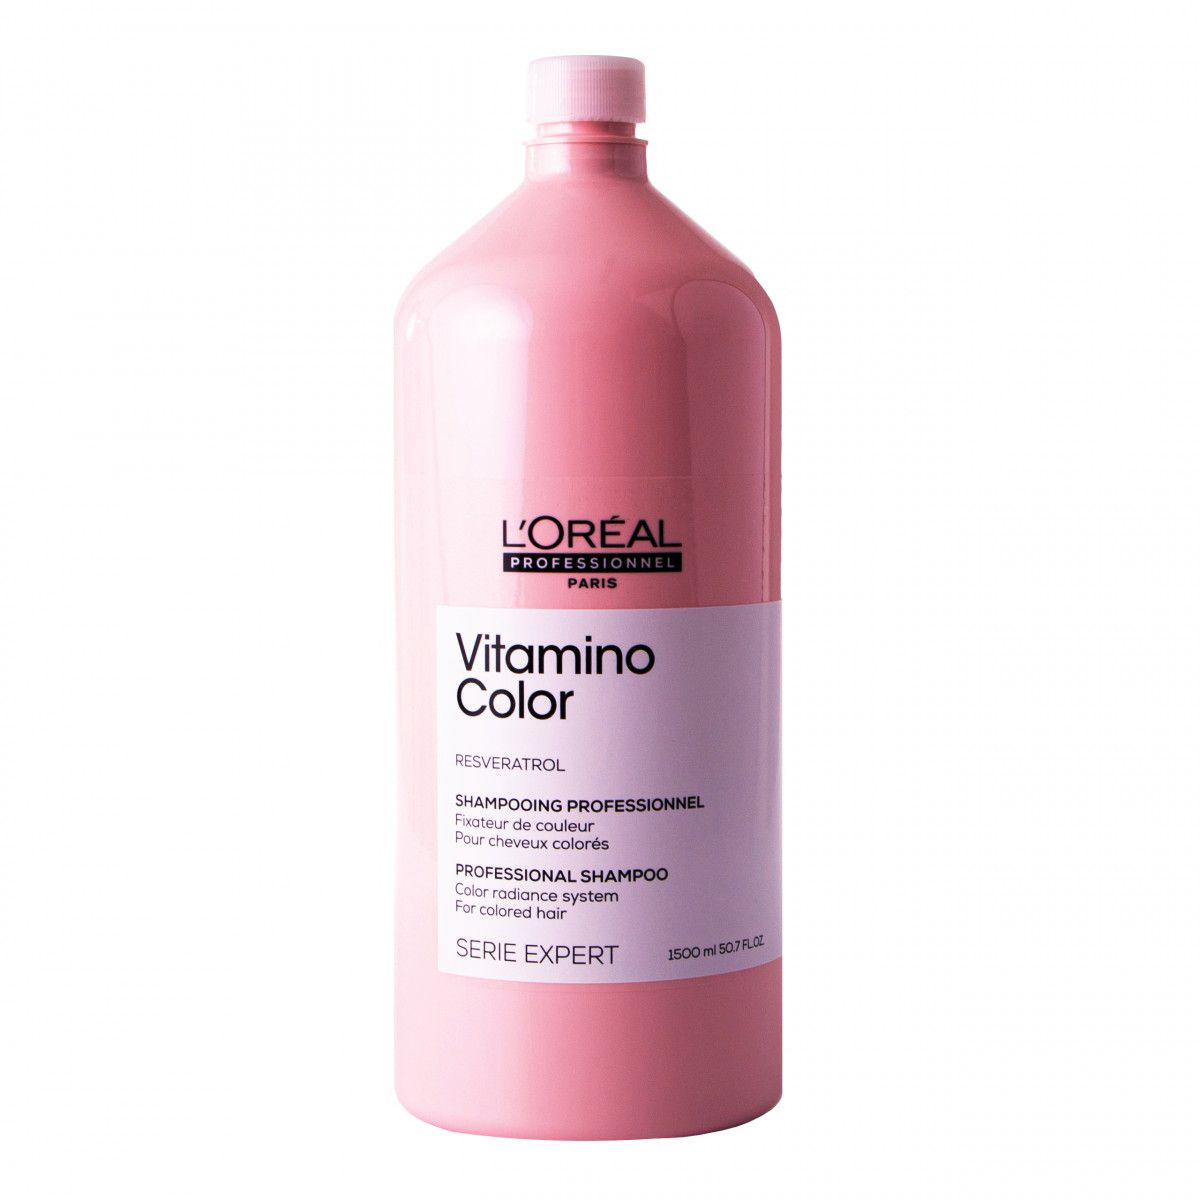 szampon loreal vitamino color 1500ml cena